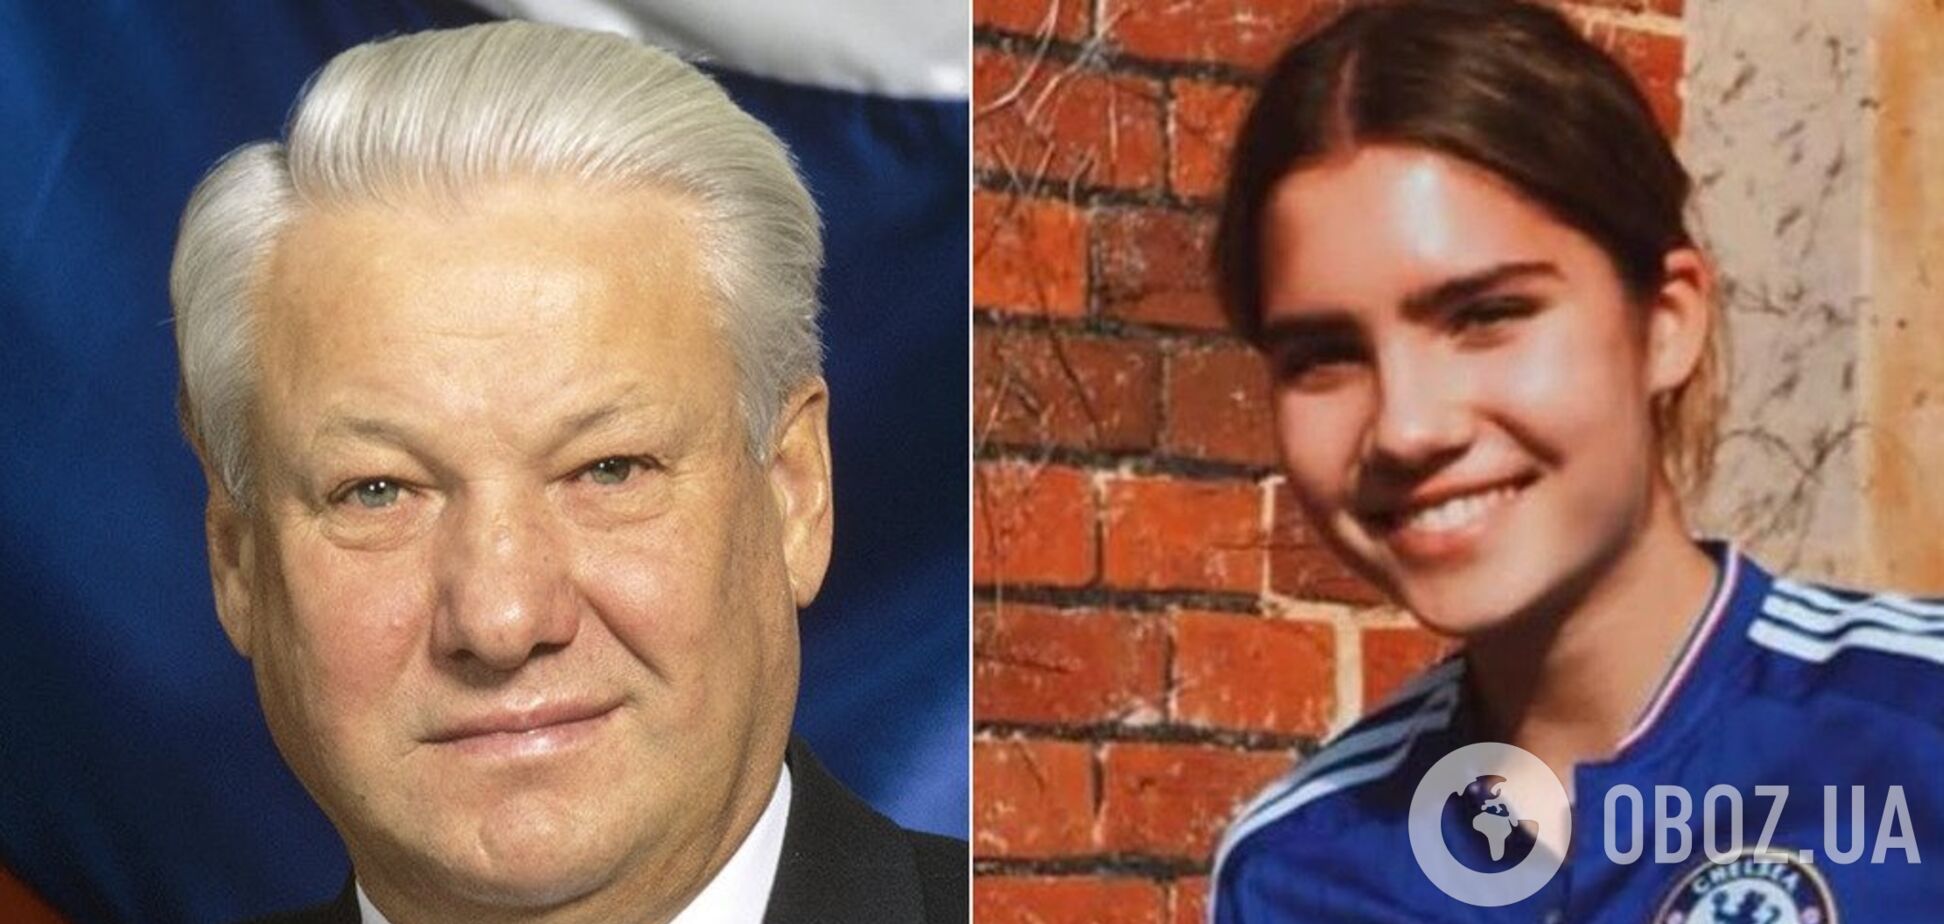 Внучка Ельцина выросла: как она сейчас выглядит и чем занимается